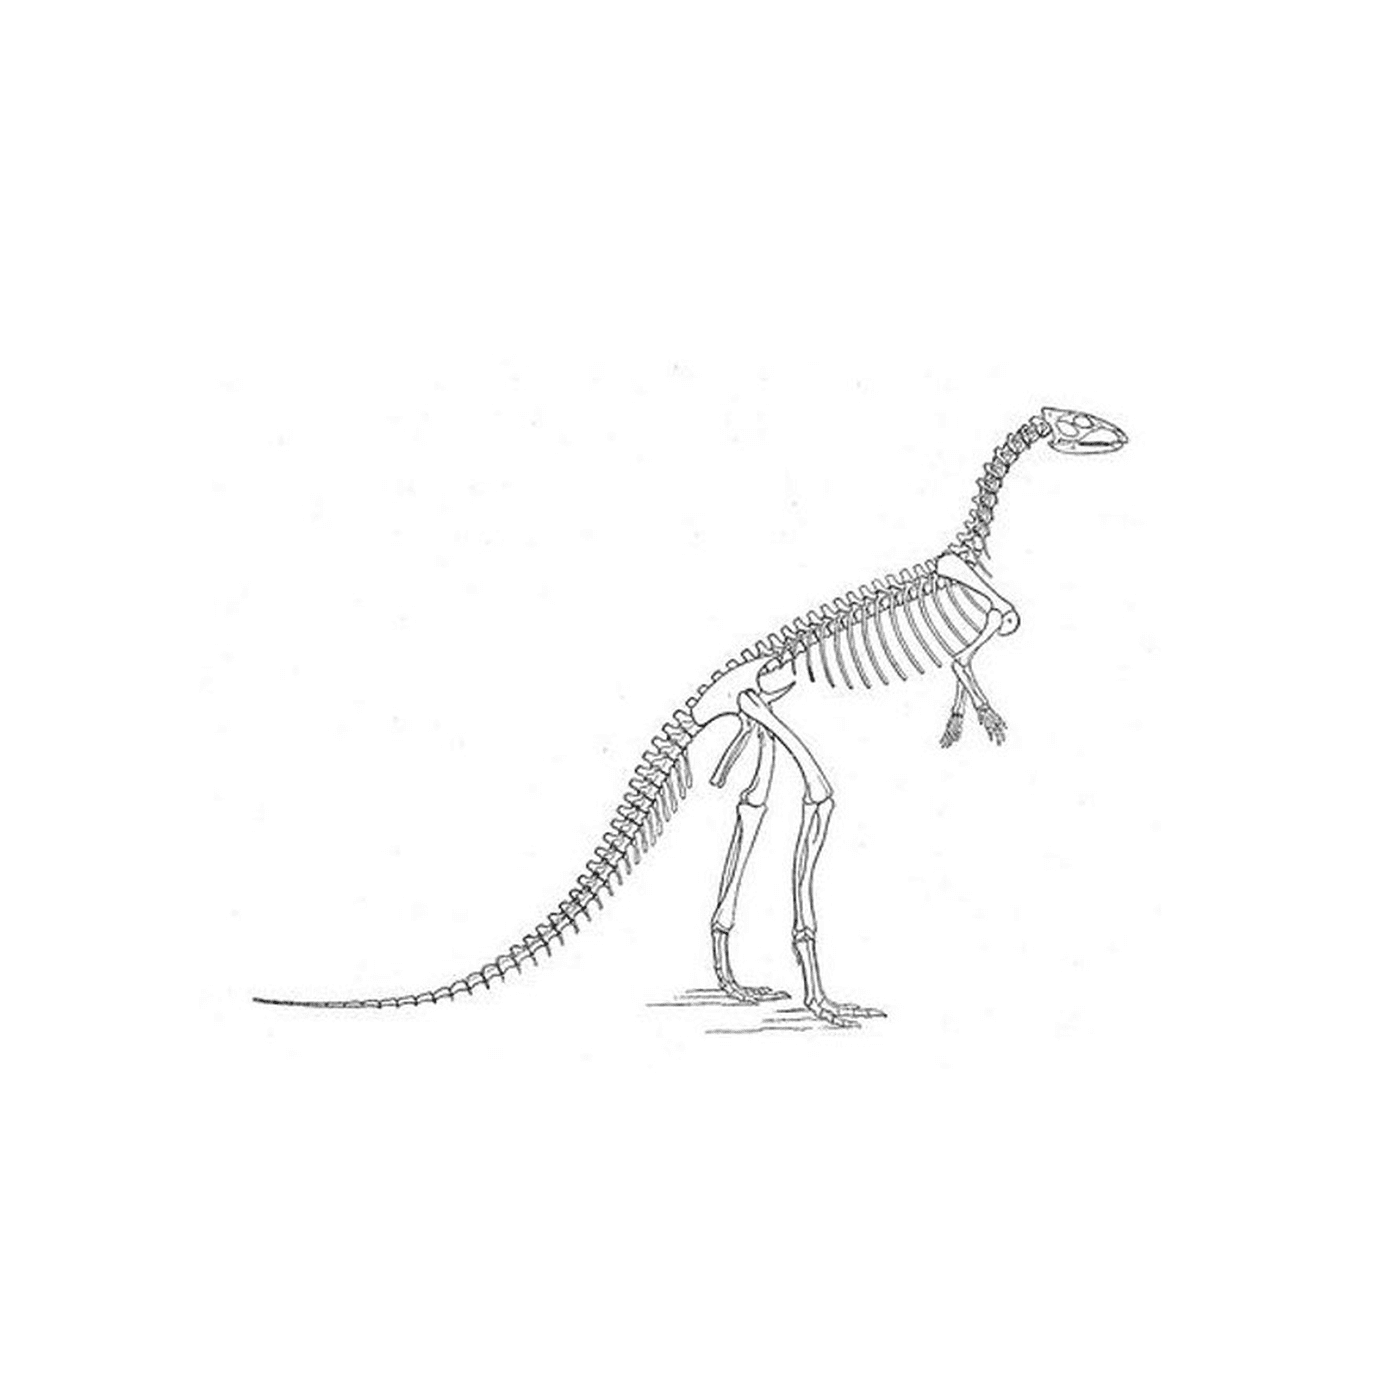  Ein Dinosaurier-Skelett 